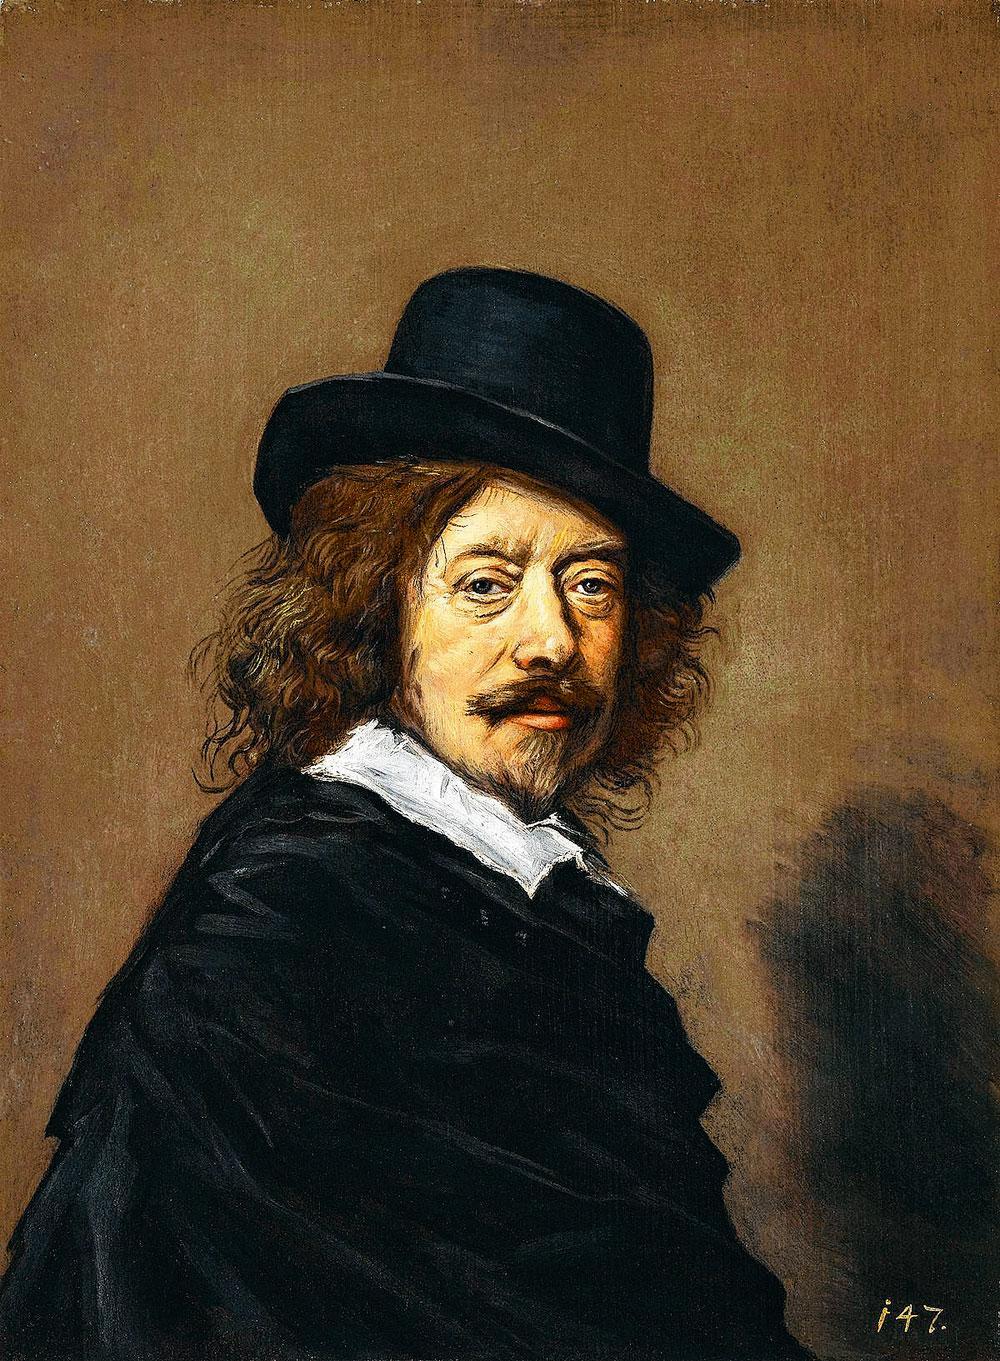 Waarom modernen Frans Hals adoreerden: 'Die schoft schilderde net zoals ik'